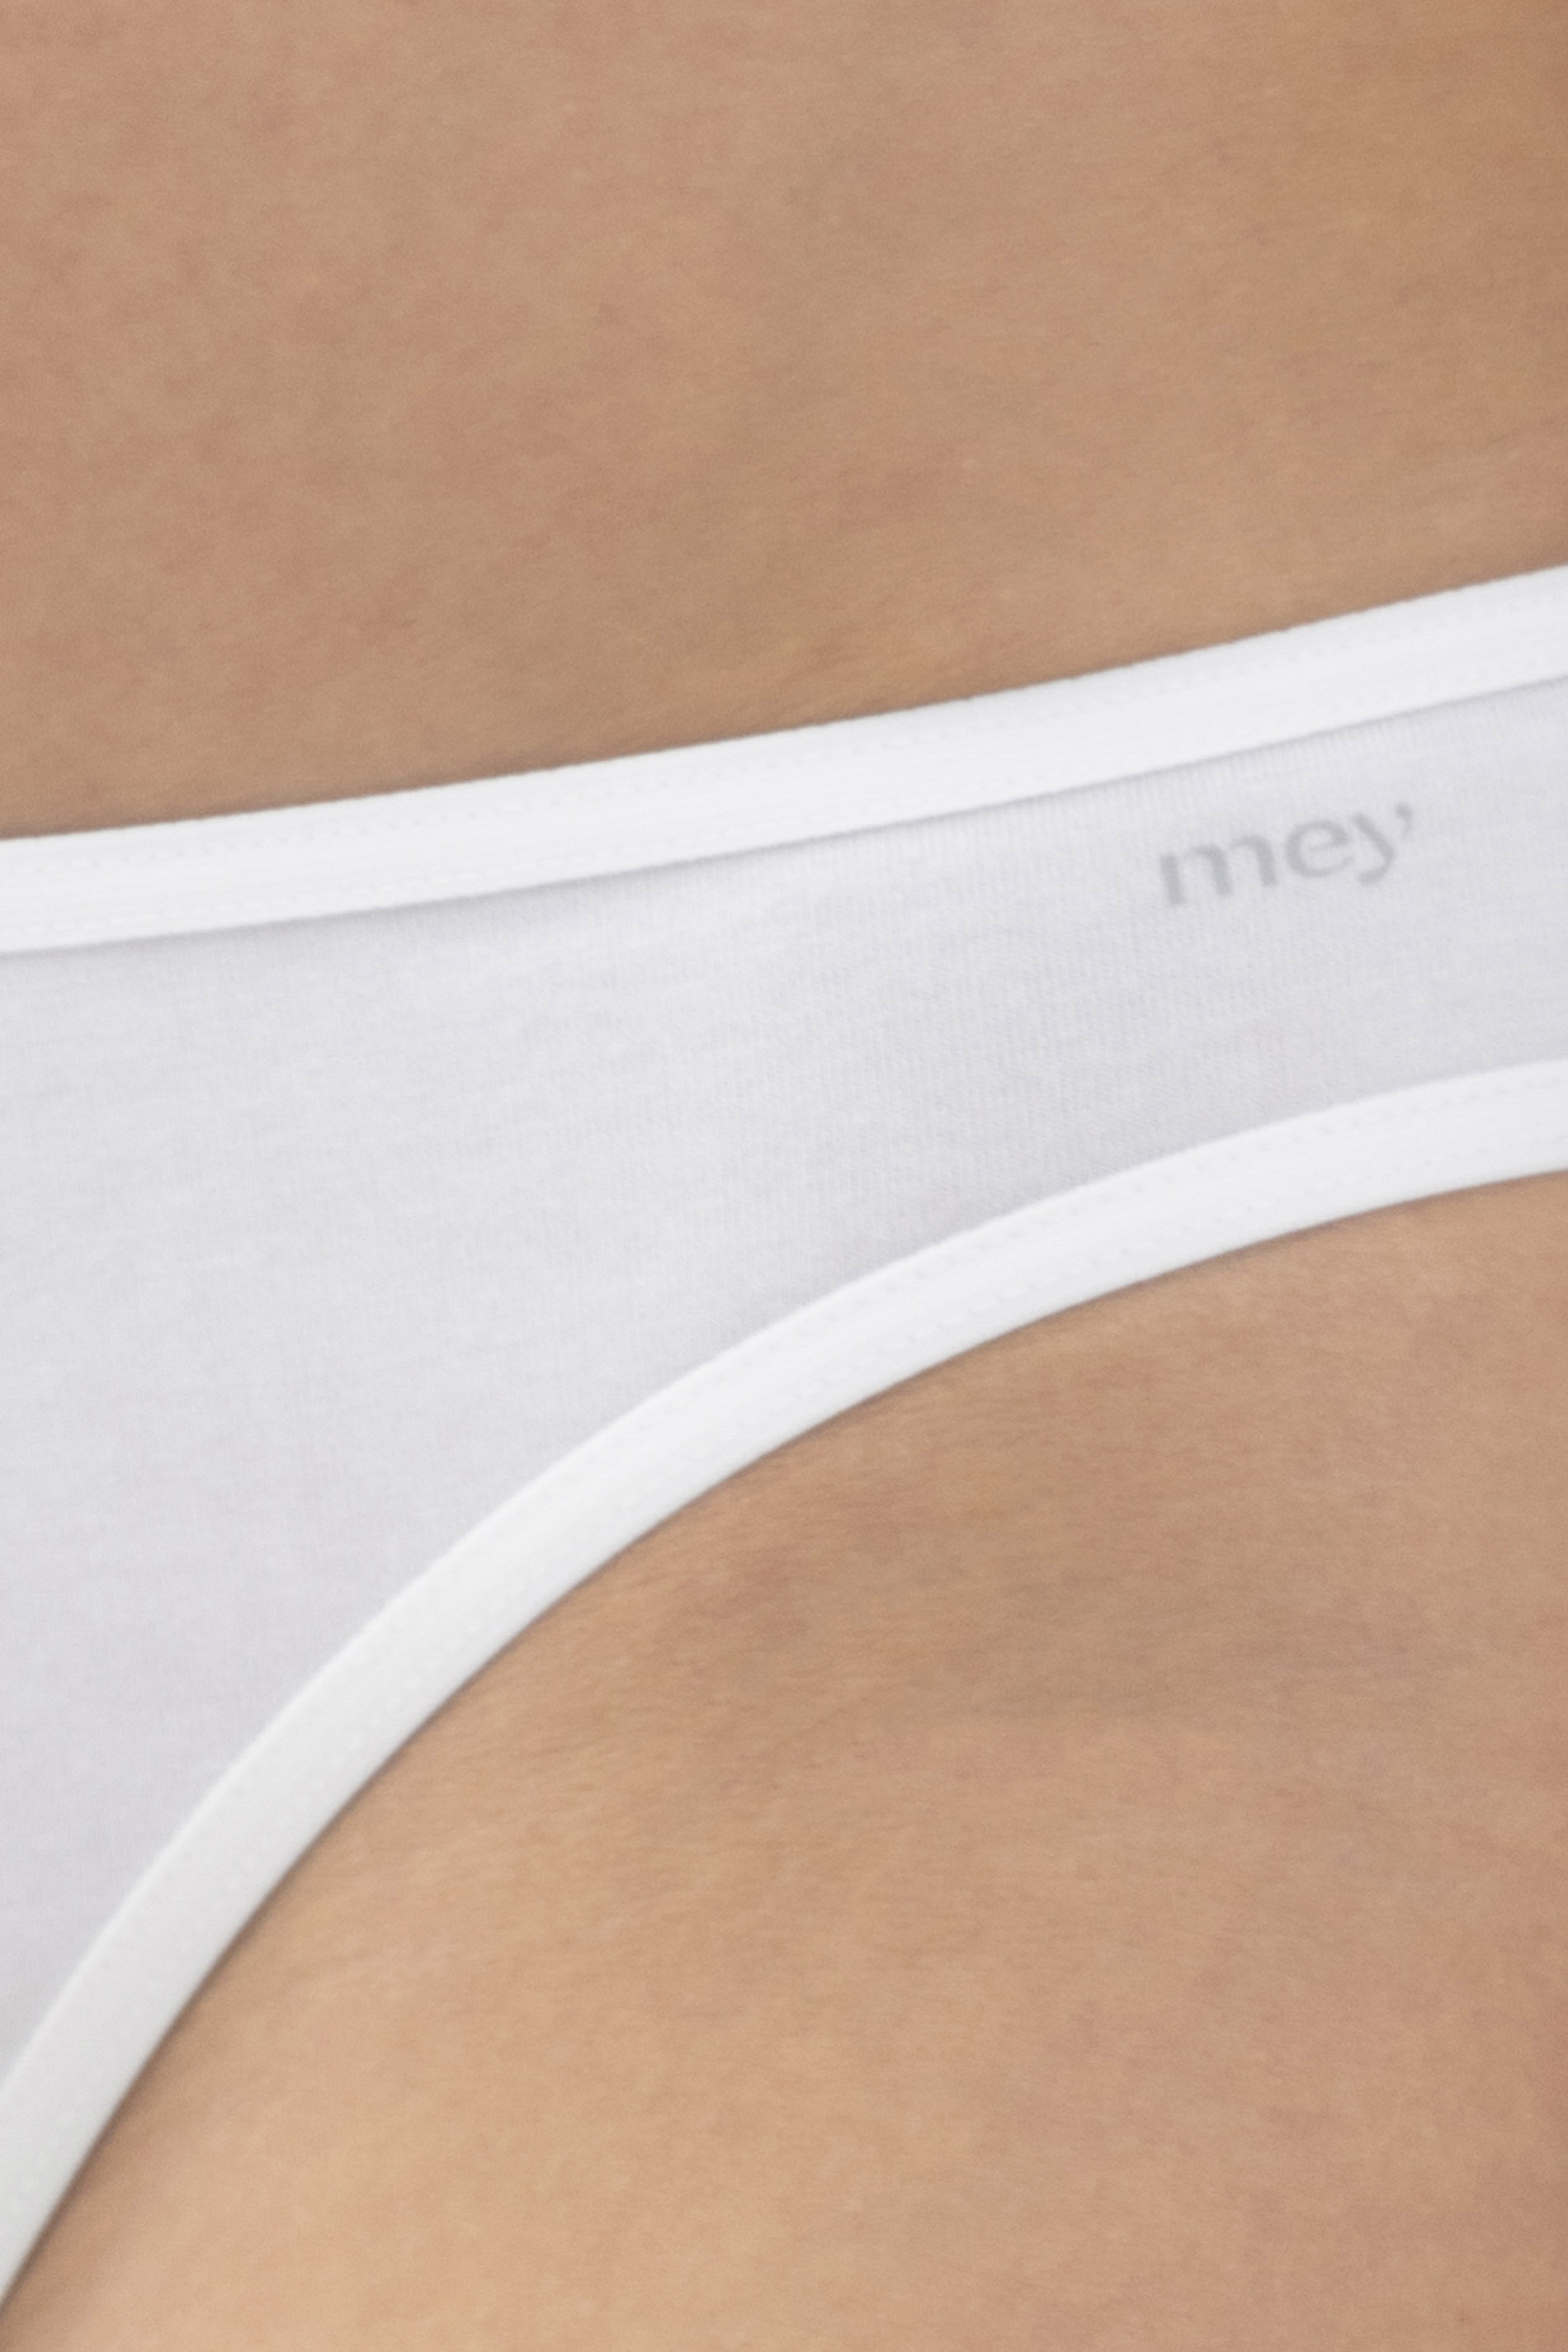 Mini-Slip Weiss Serie Cotton Pure Detailansicht 01 | mey®